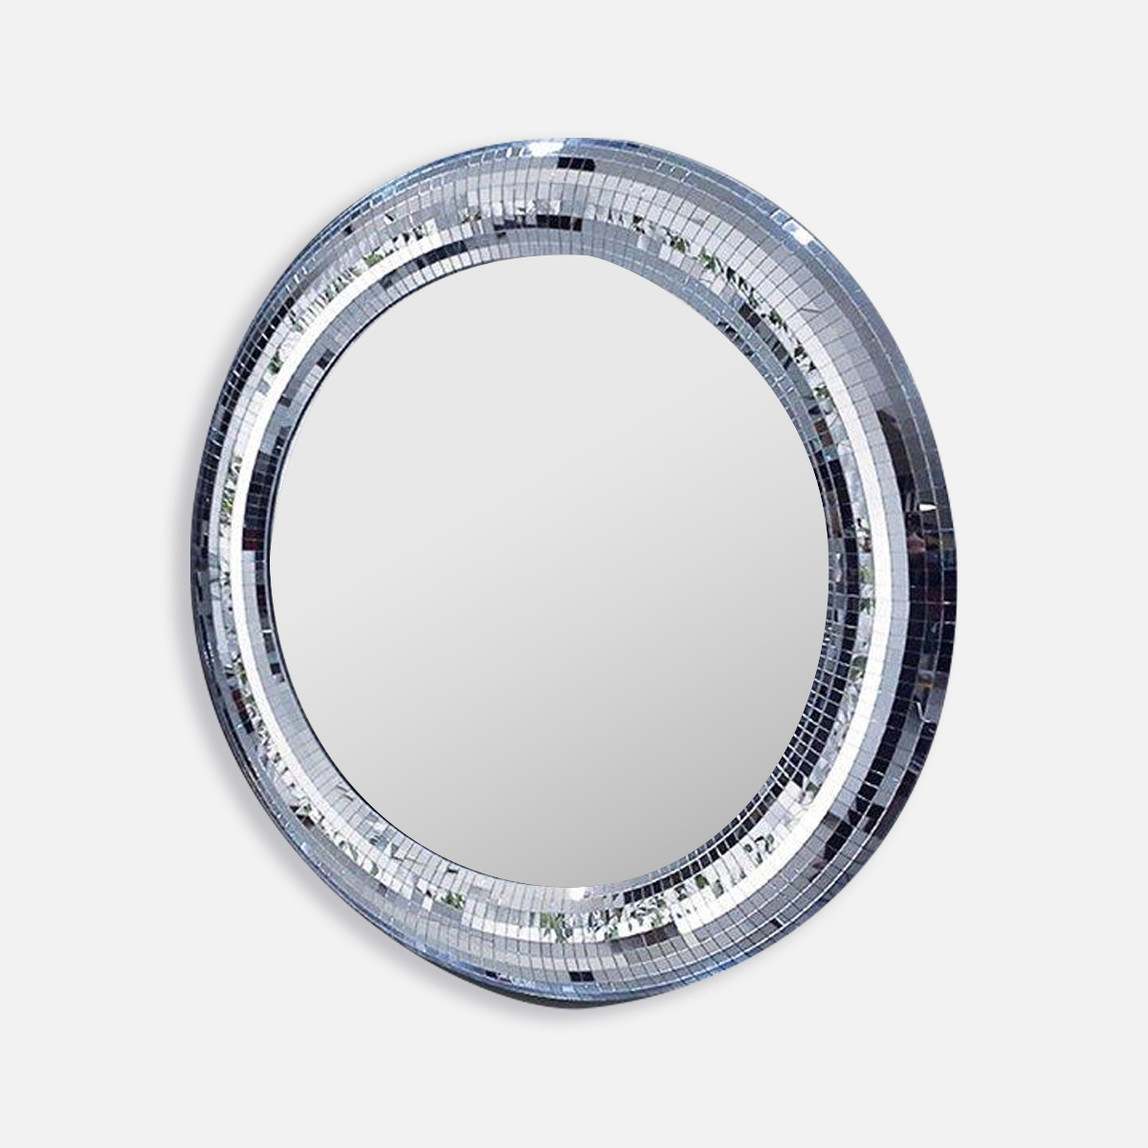    Murano 10X10 mm  Mozaik   Füme  Beyaz  Ayna 